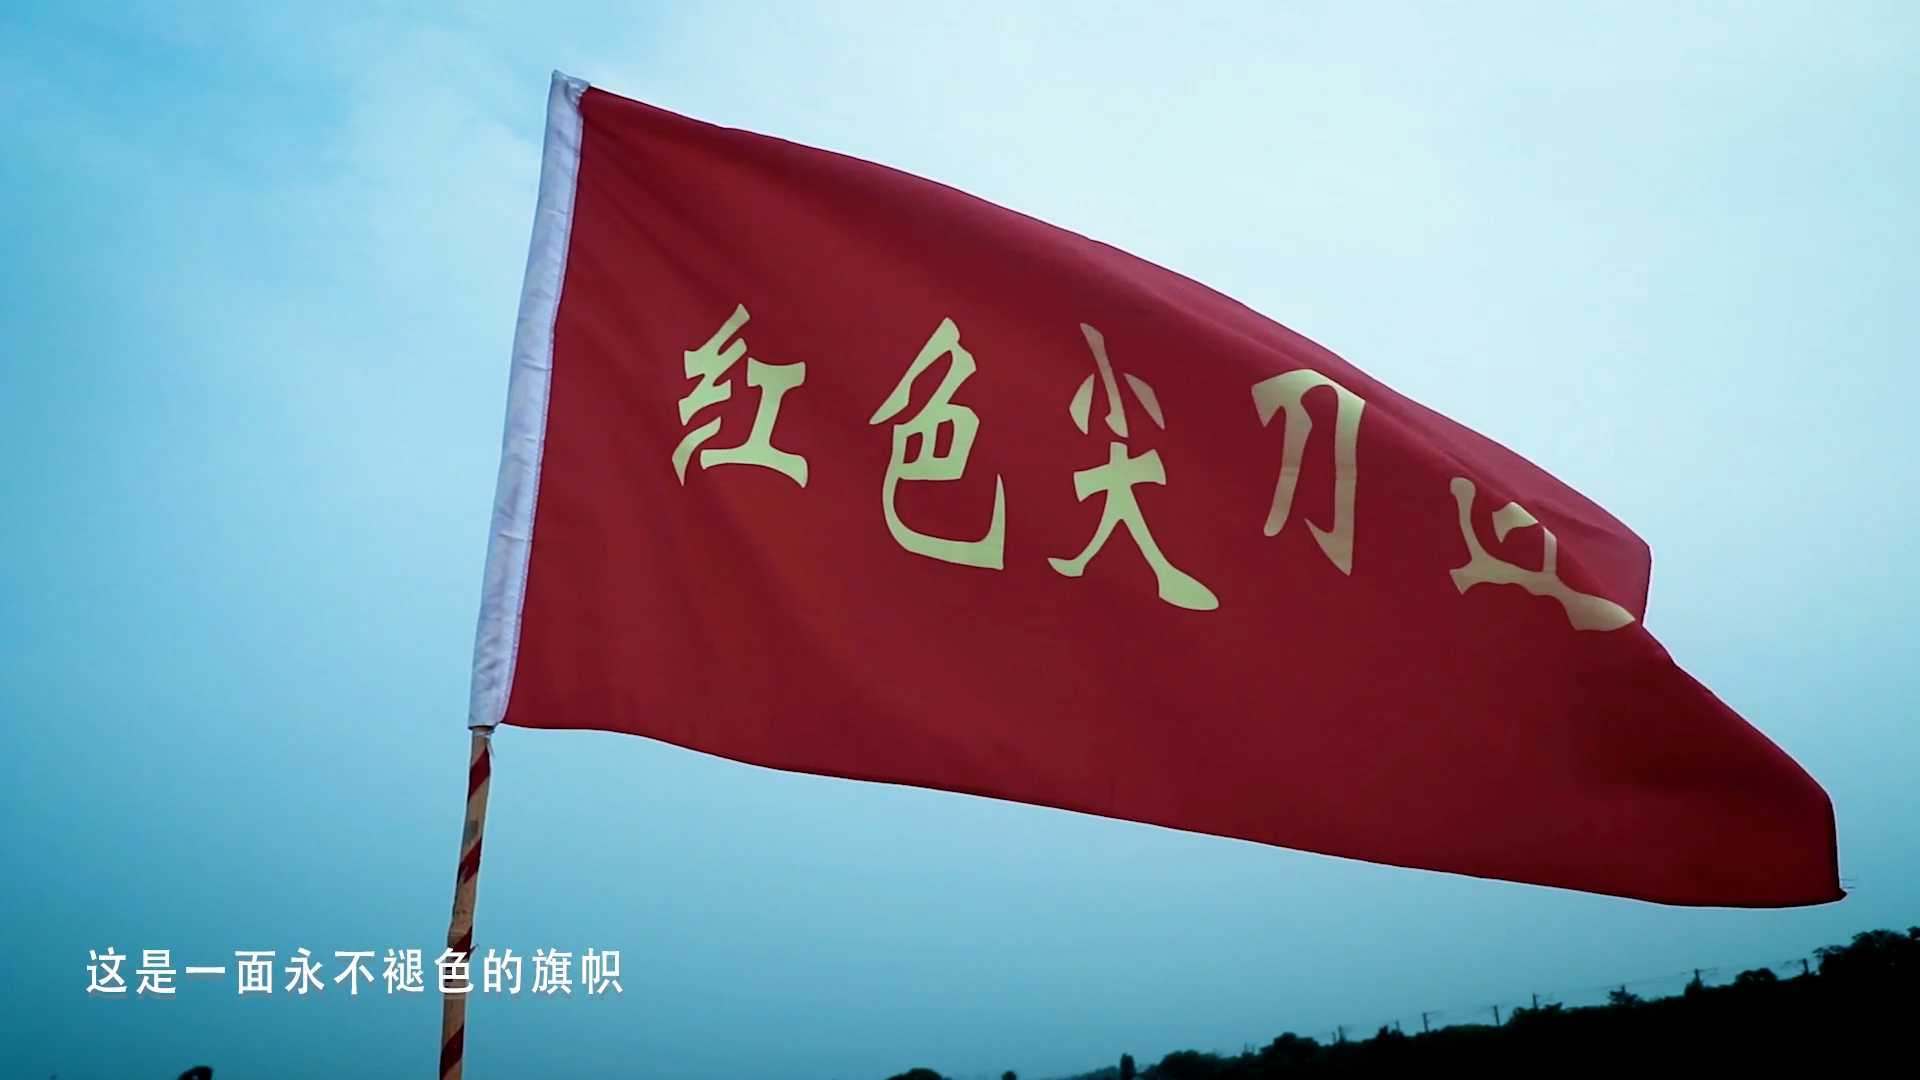 第十届中国大学生电视节大学生党员演讲比赛最佳作品《红心向党，戎耀四方》